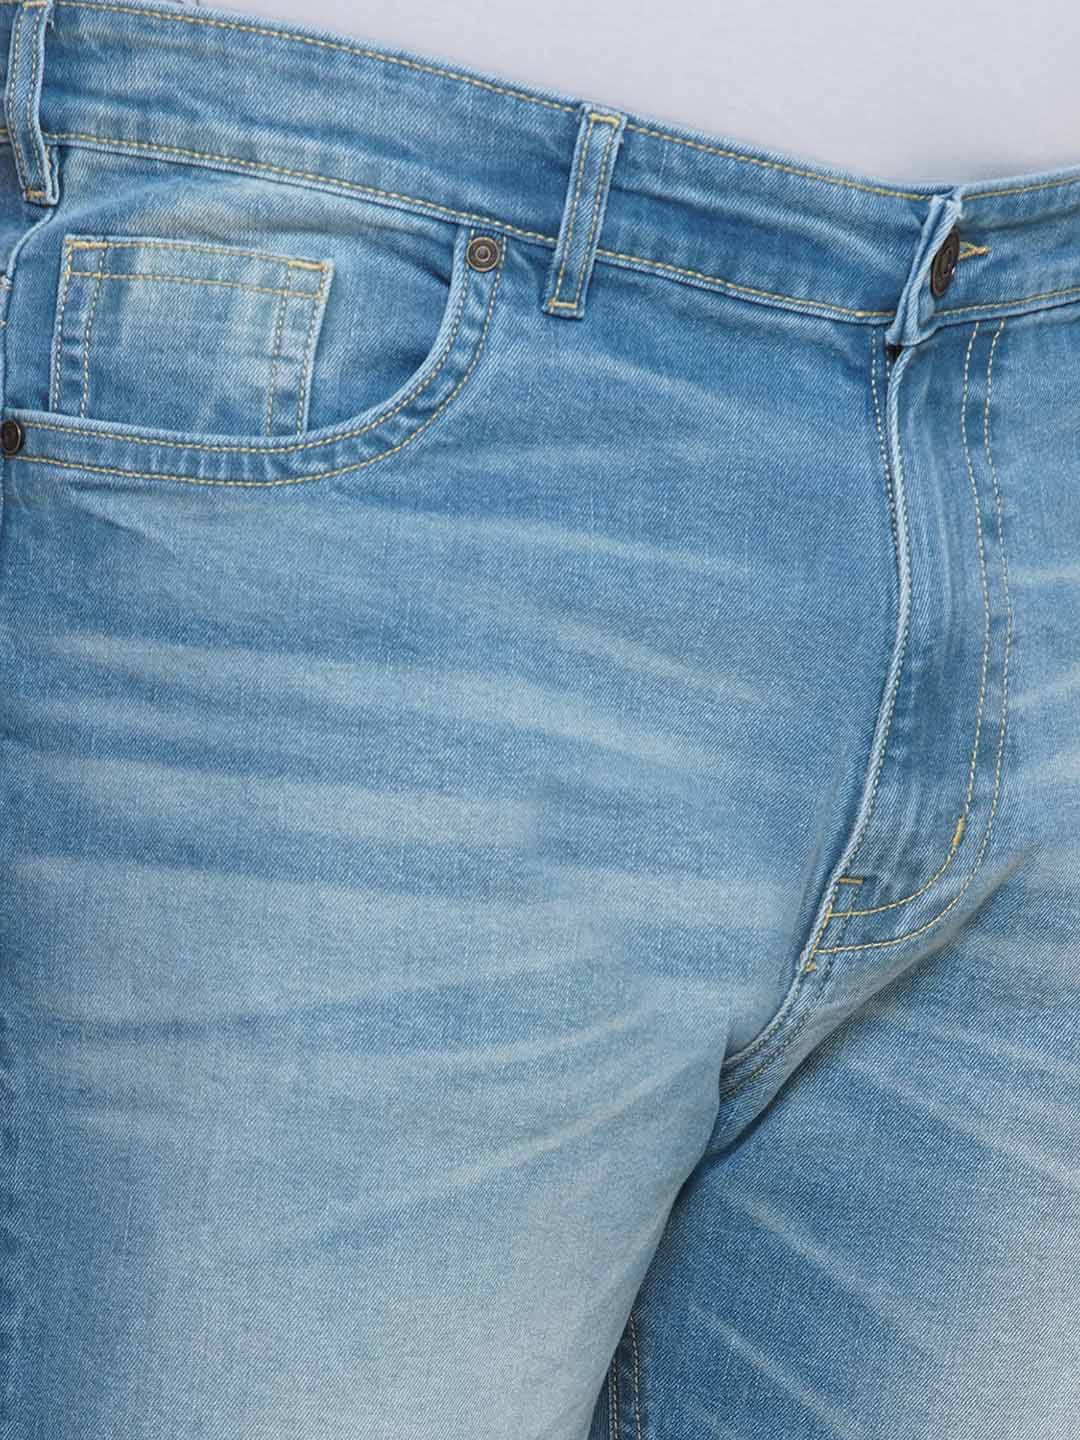 bottomwear/jeans/JPJ12392/jpj12392-2.jpg